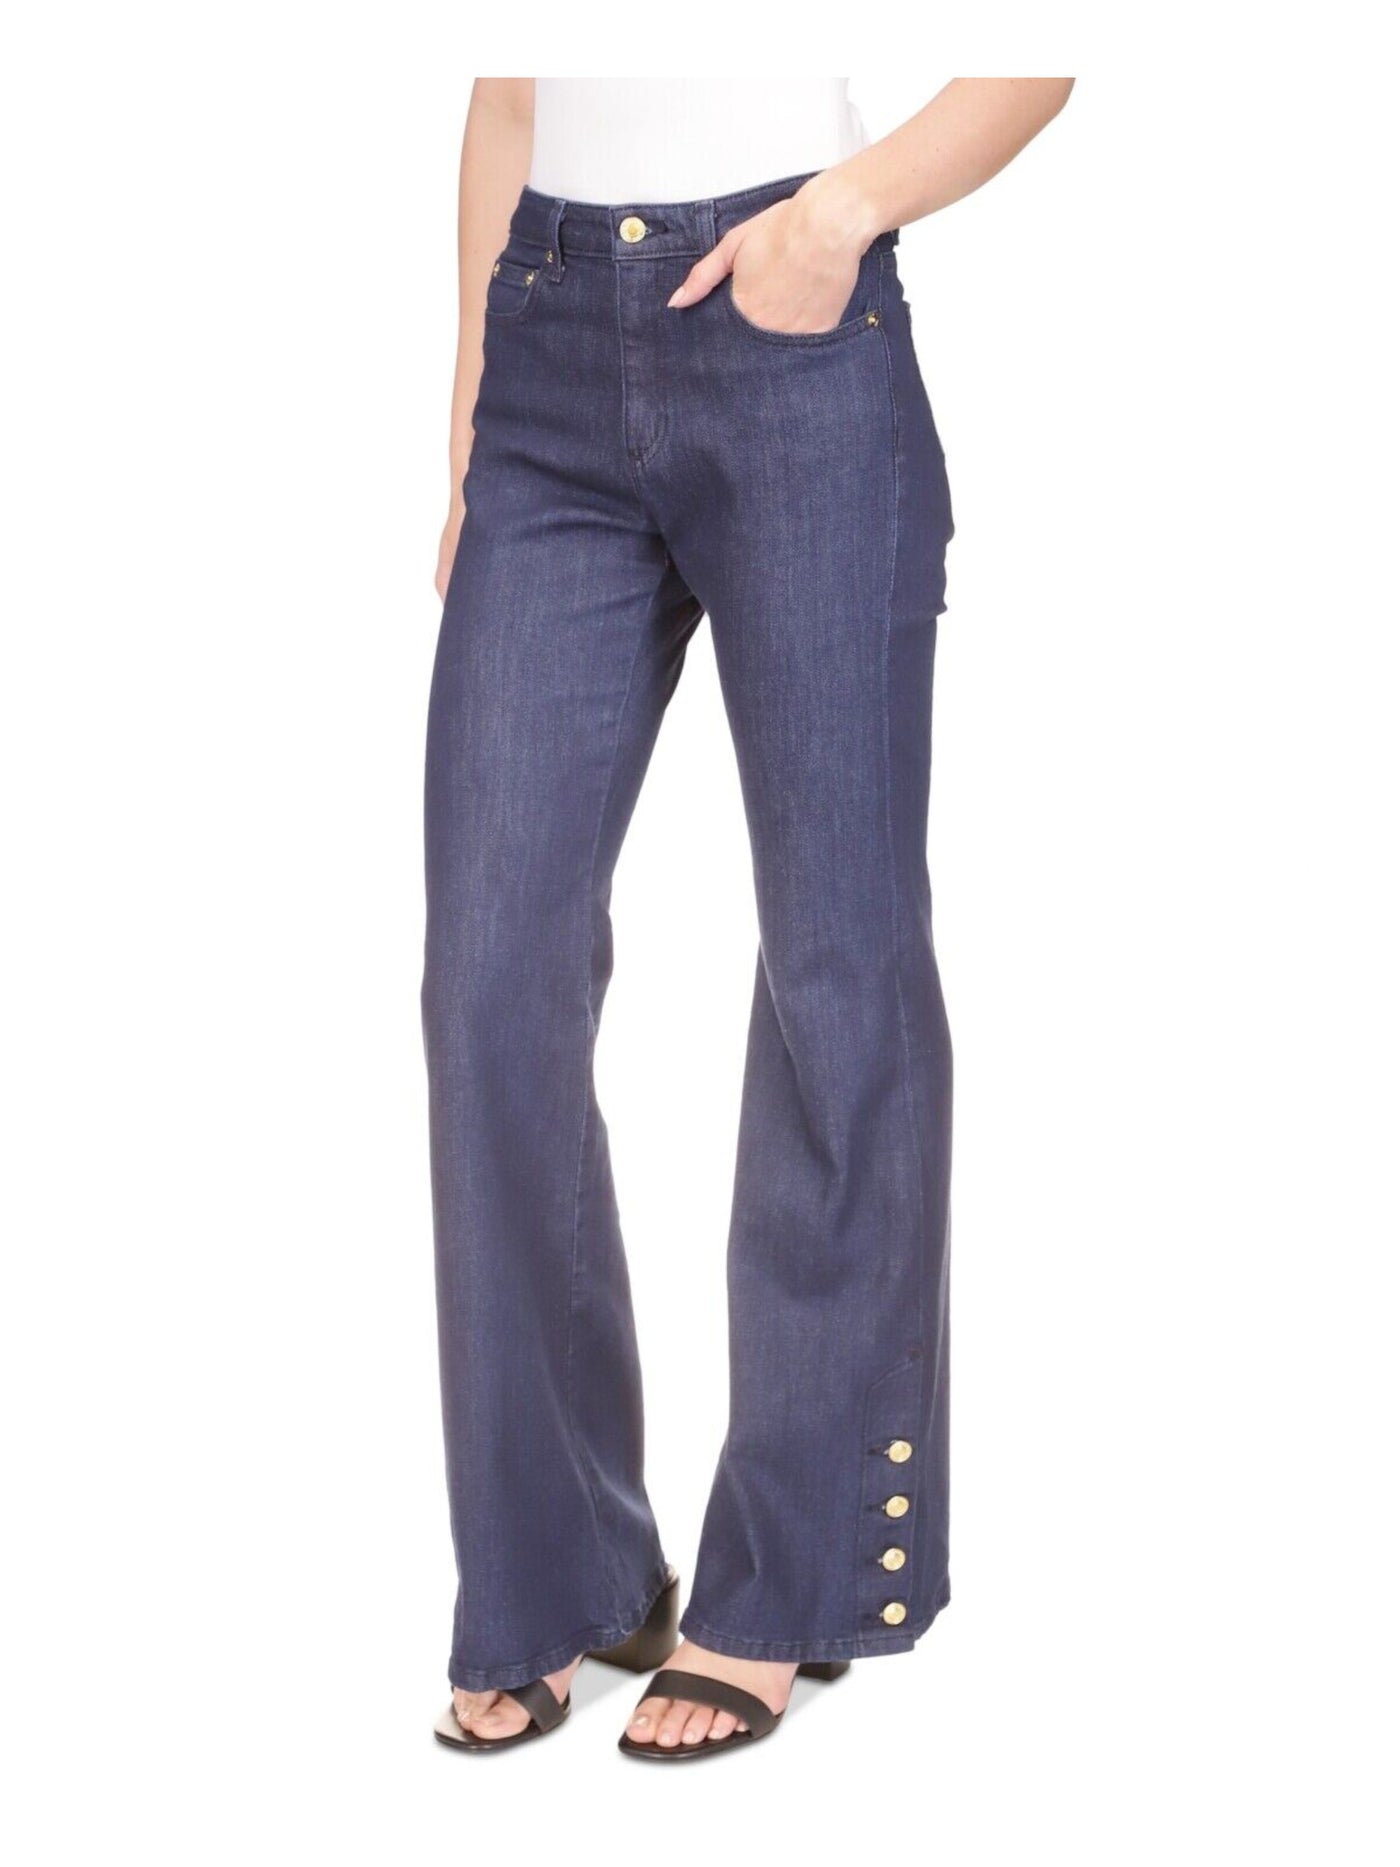 MICHAEL KORS Womens Navy Zippered Pocketed Button-hem Flare Leg High Waist Jeans Petites 4P